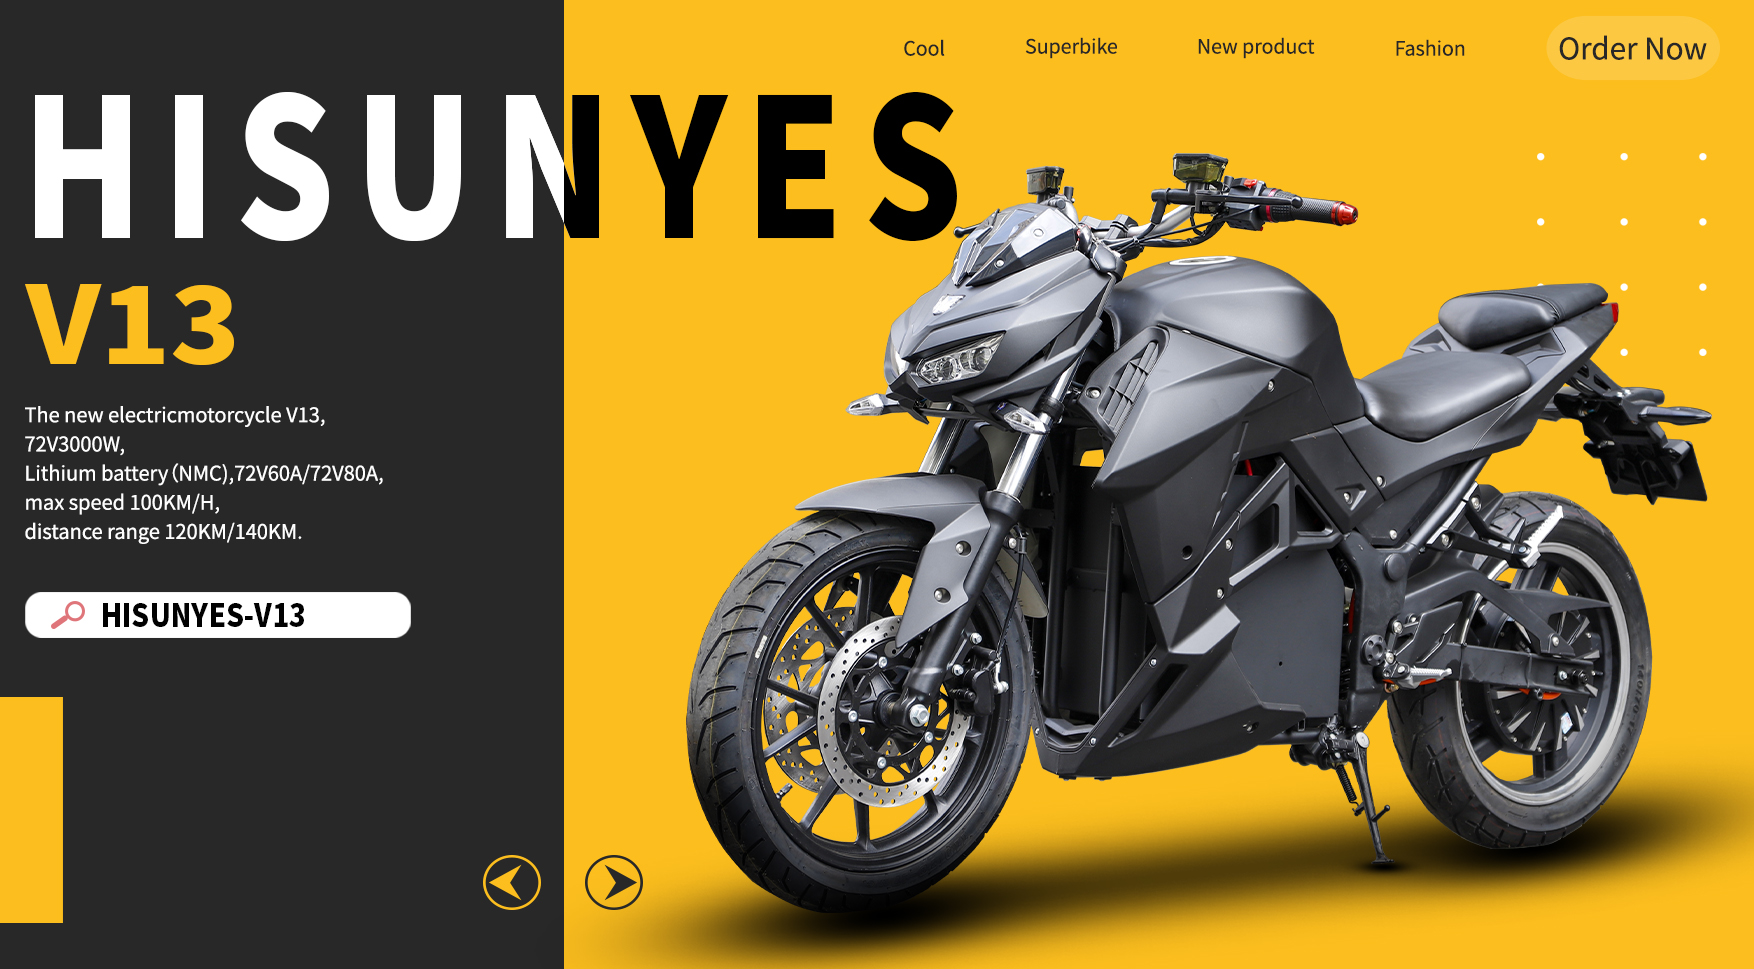 A nova motocicleta elétrica Hisunyes-V13, combinando moda e tecnologia, venha e dê uma olhada!